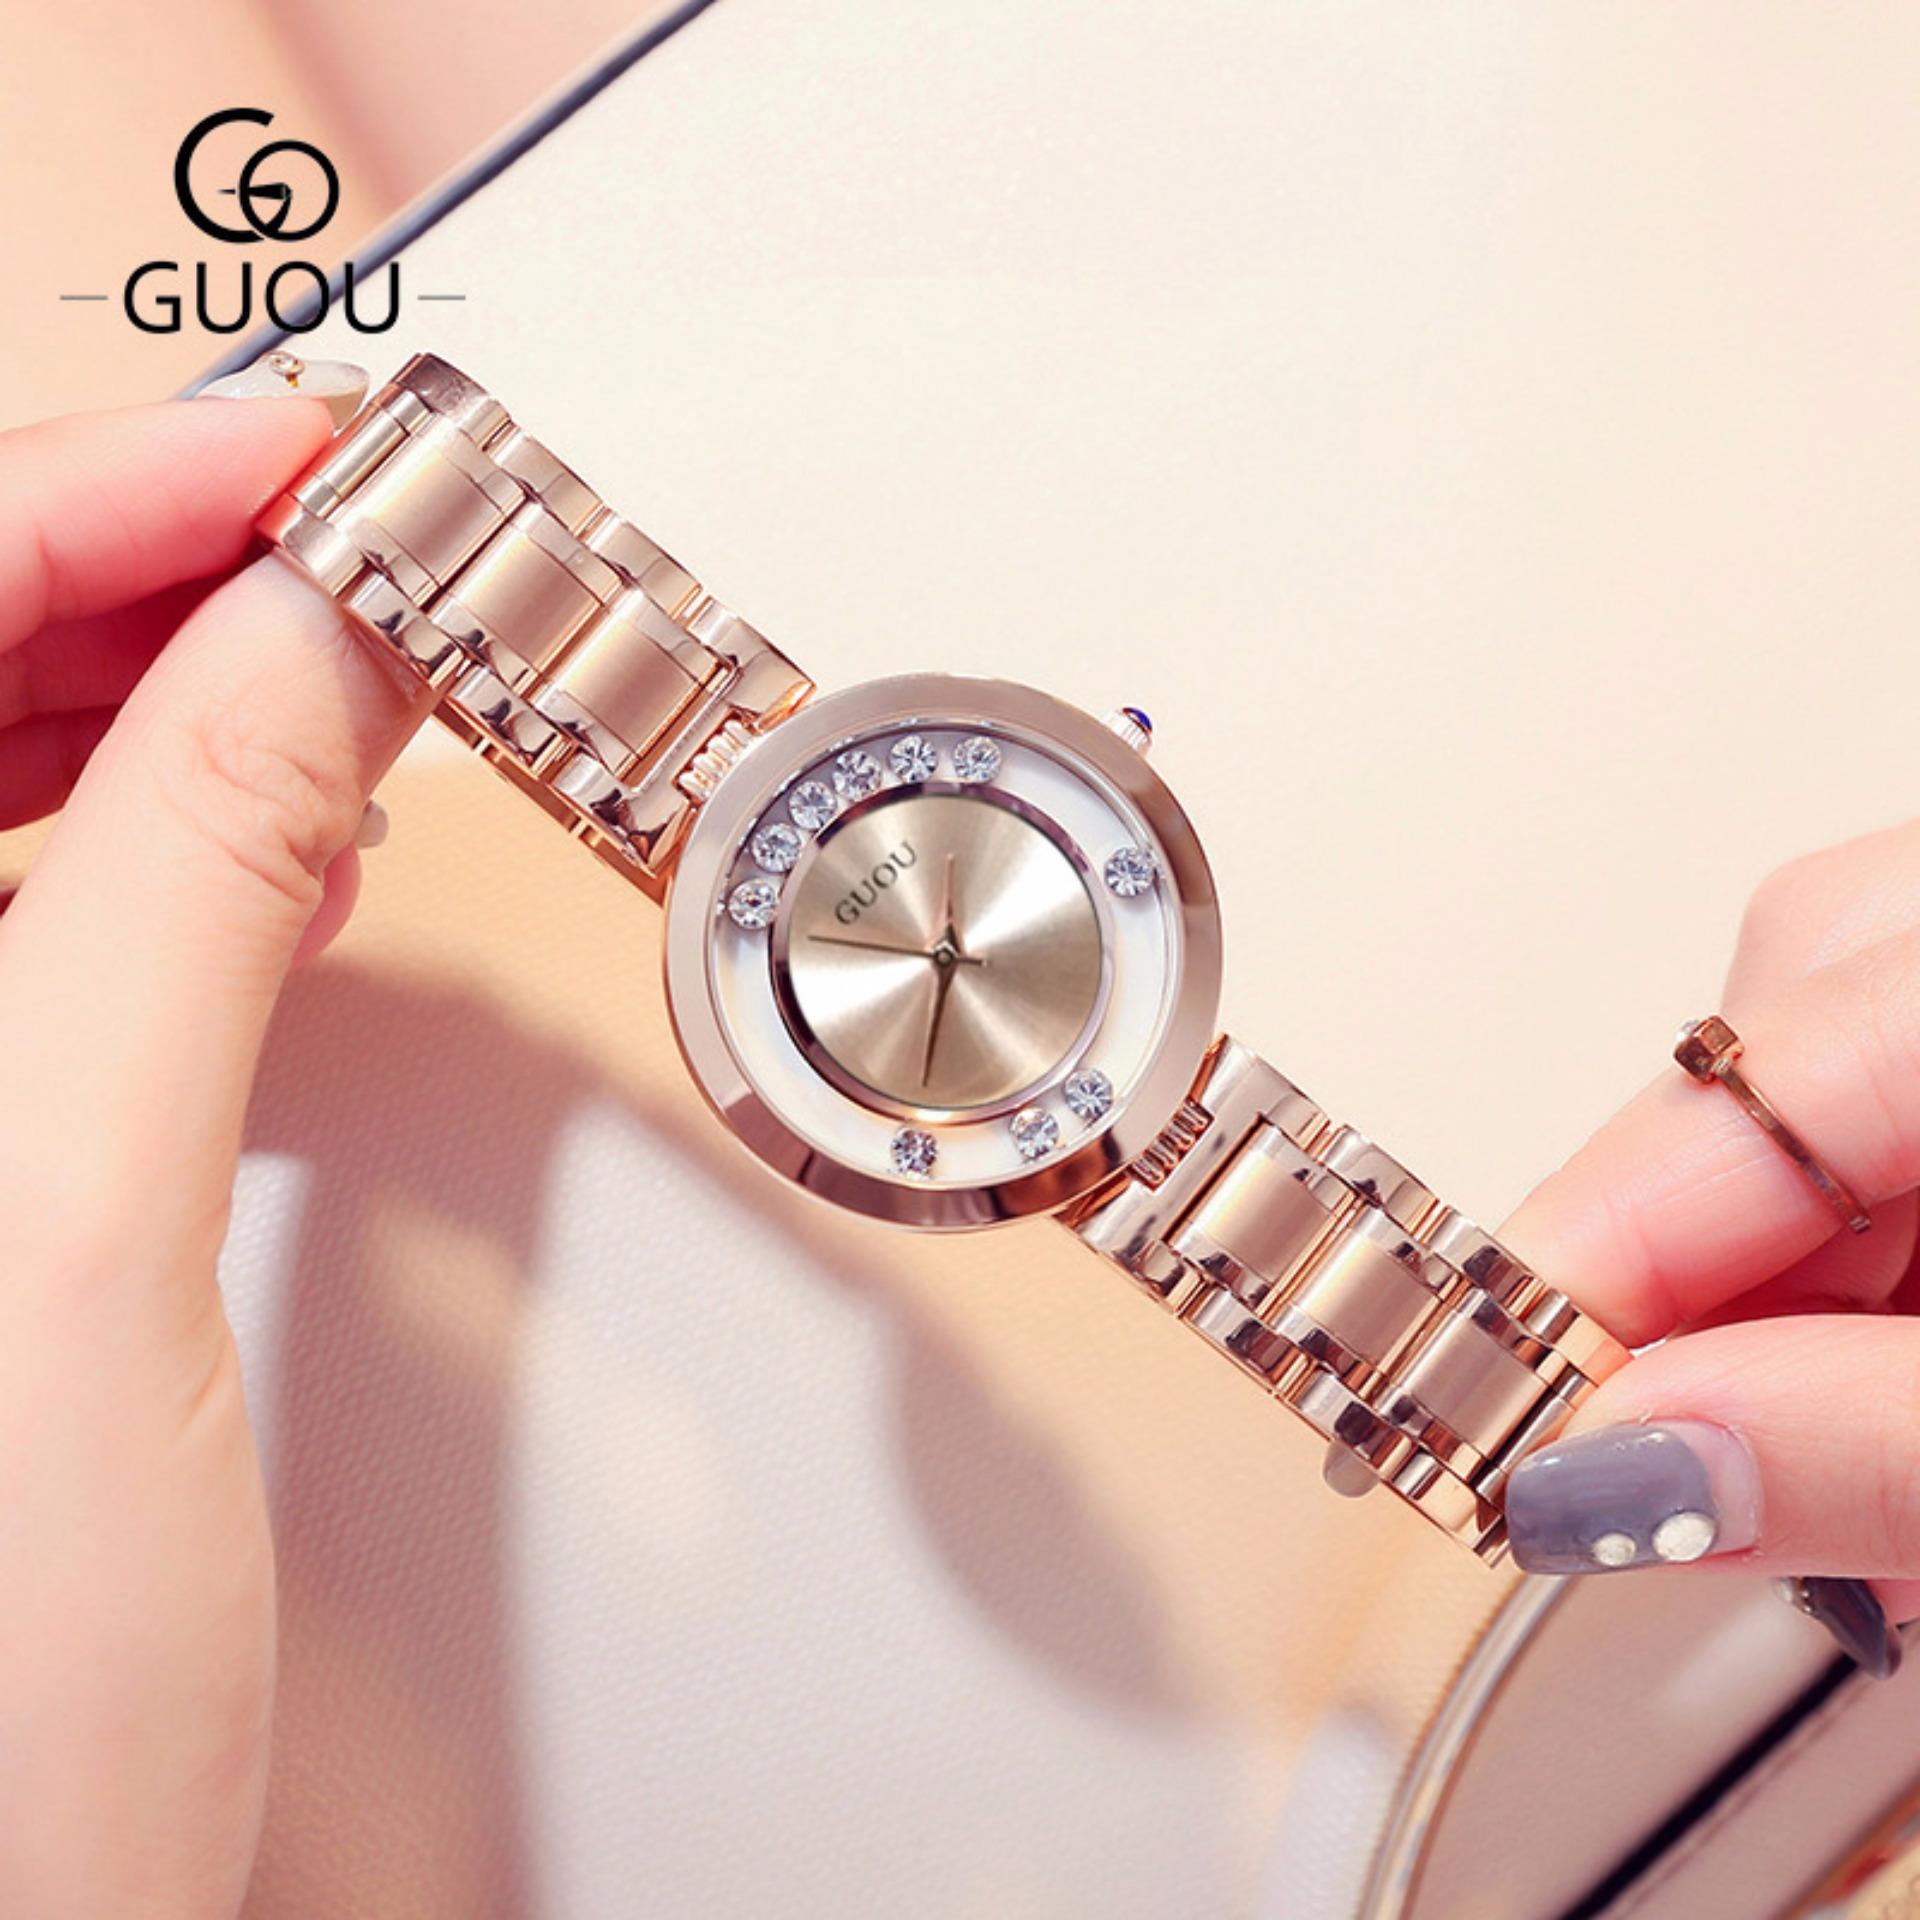 Đồng hồ nữ GUOU mặt đá chạy, dây thép quý phái G36-91